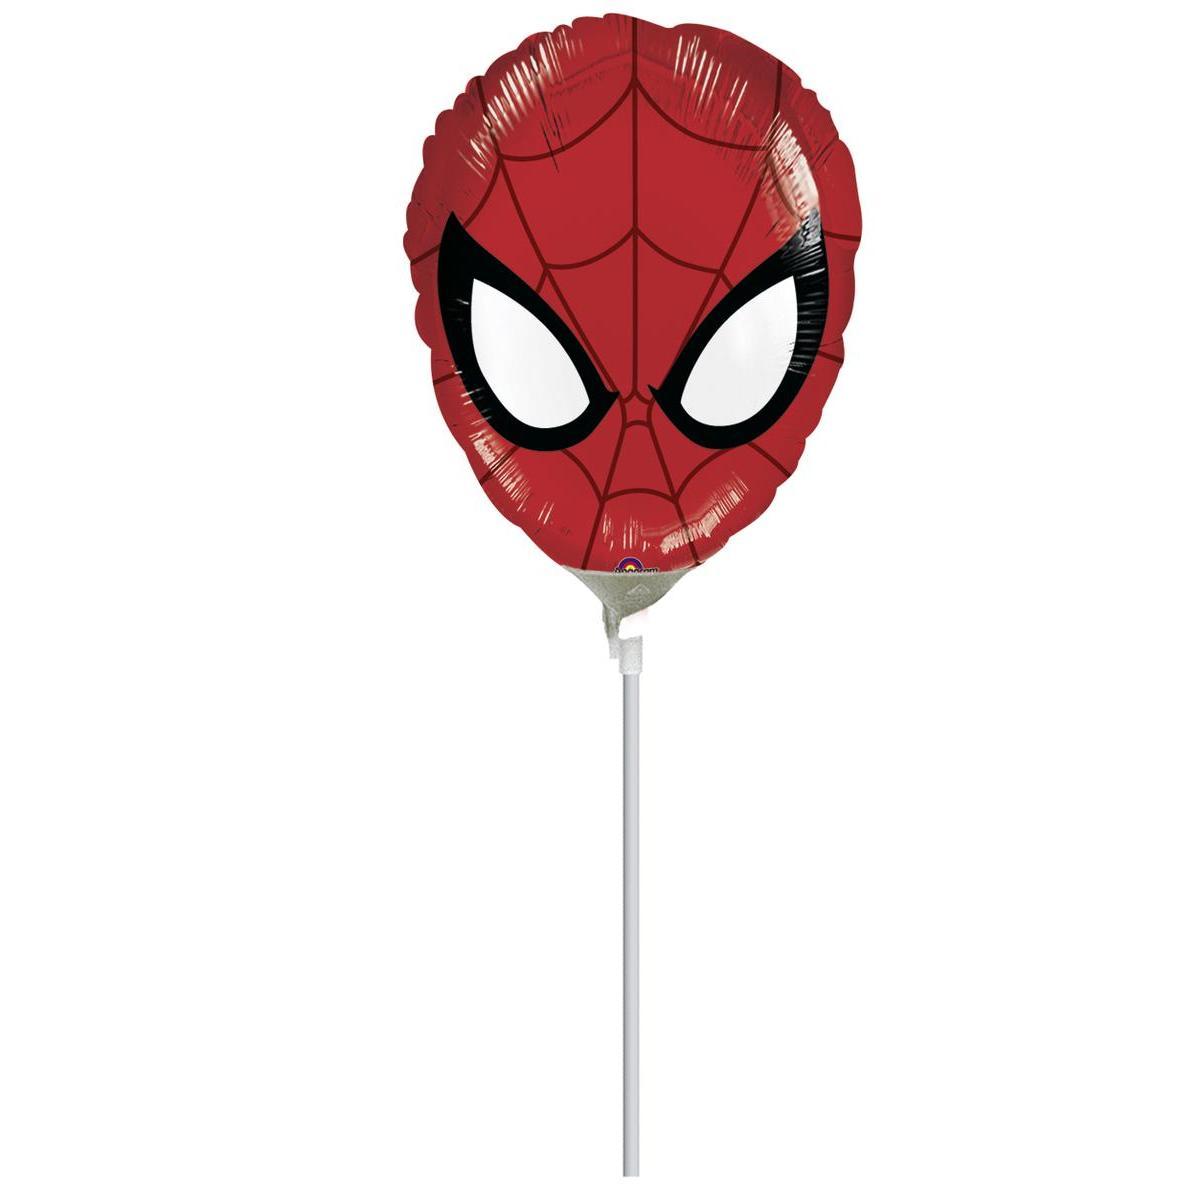 Ballon gonflé sur tige - Mylar - Ø 28 cm - Modèle Spider-man